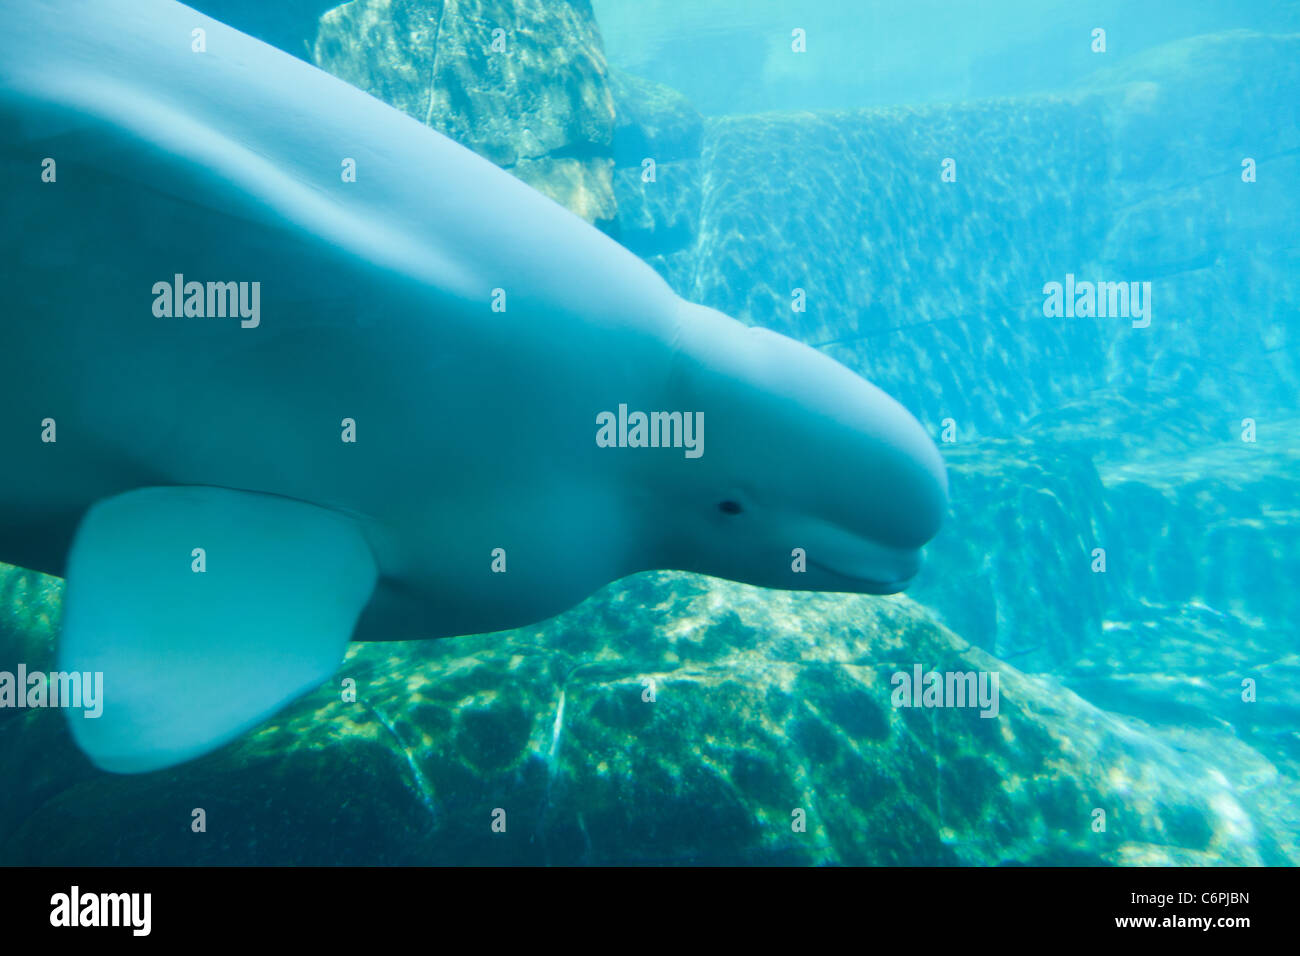 L'extrémité avant d'une femelle adulte beluga plongée sous l'eau Banque D'Images